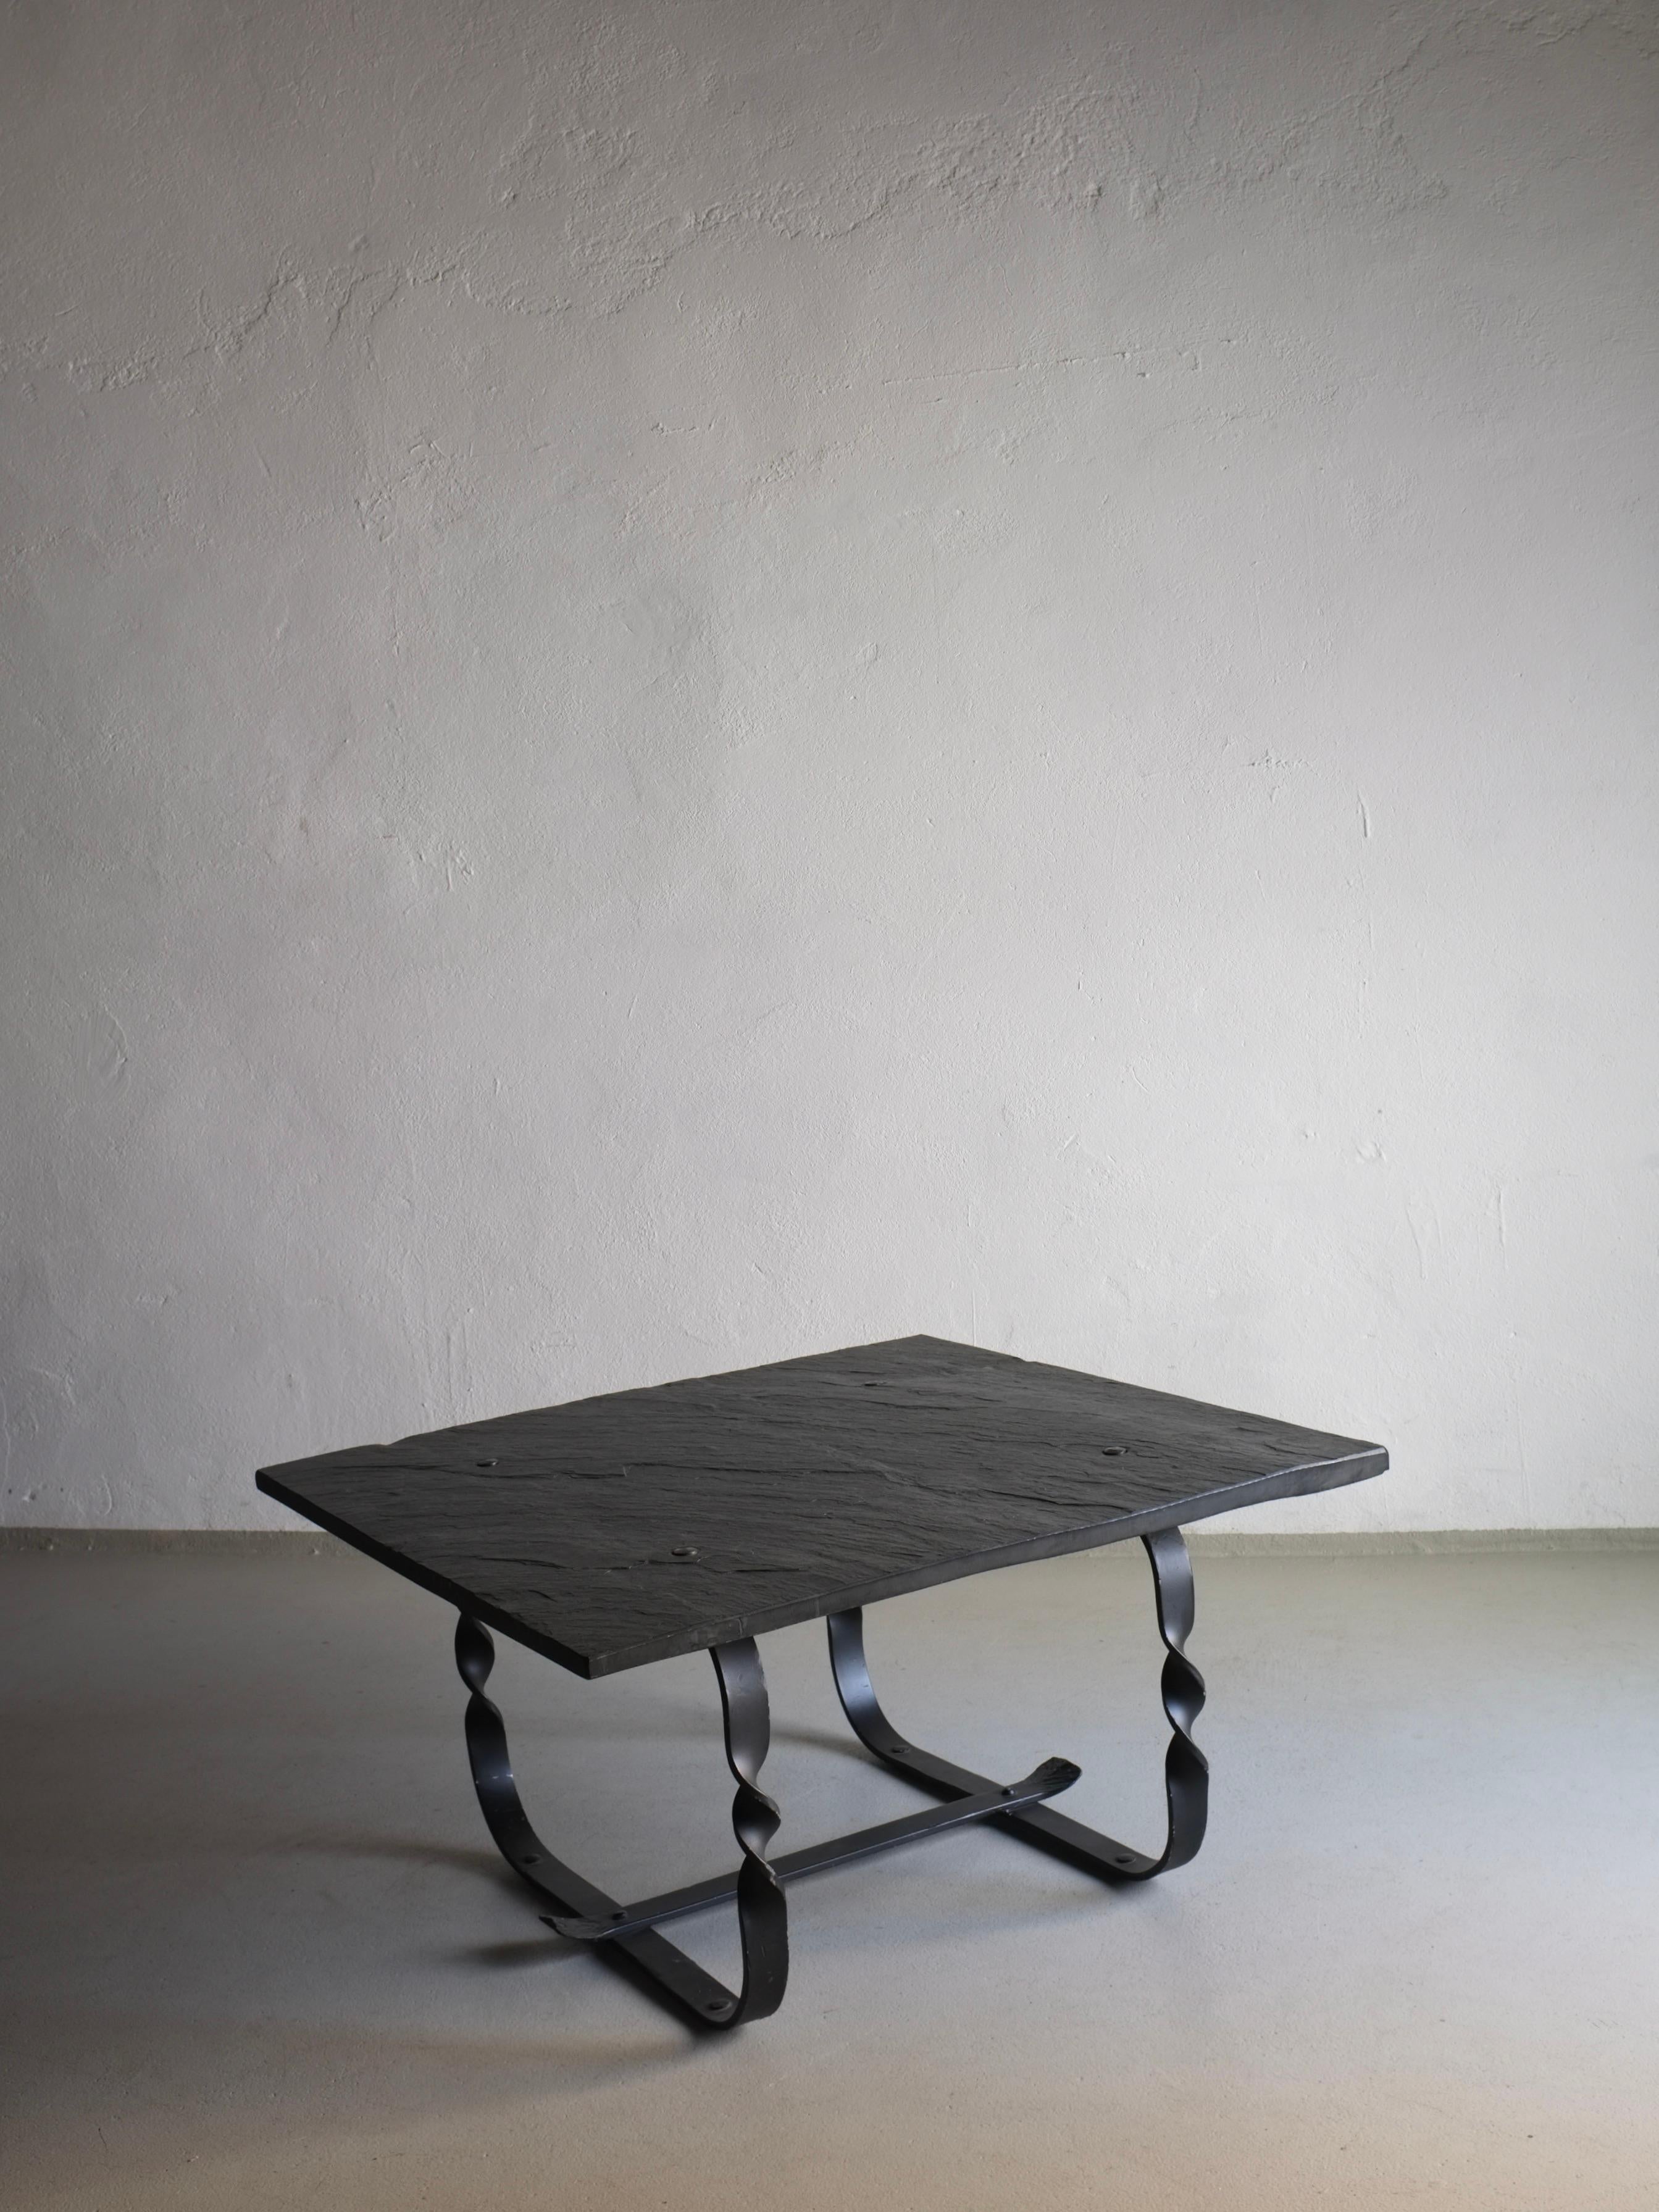 Plateau de table en pierre noire Wabi Sabi avec base en métal forgé. Article lourd.